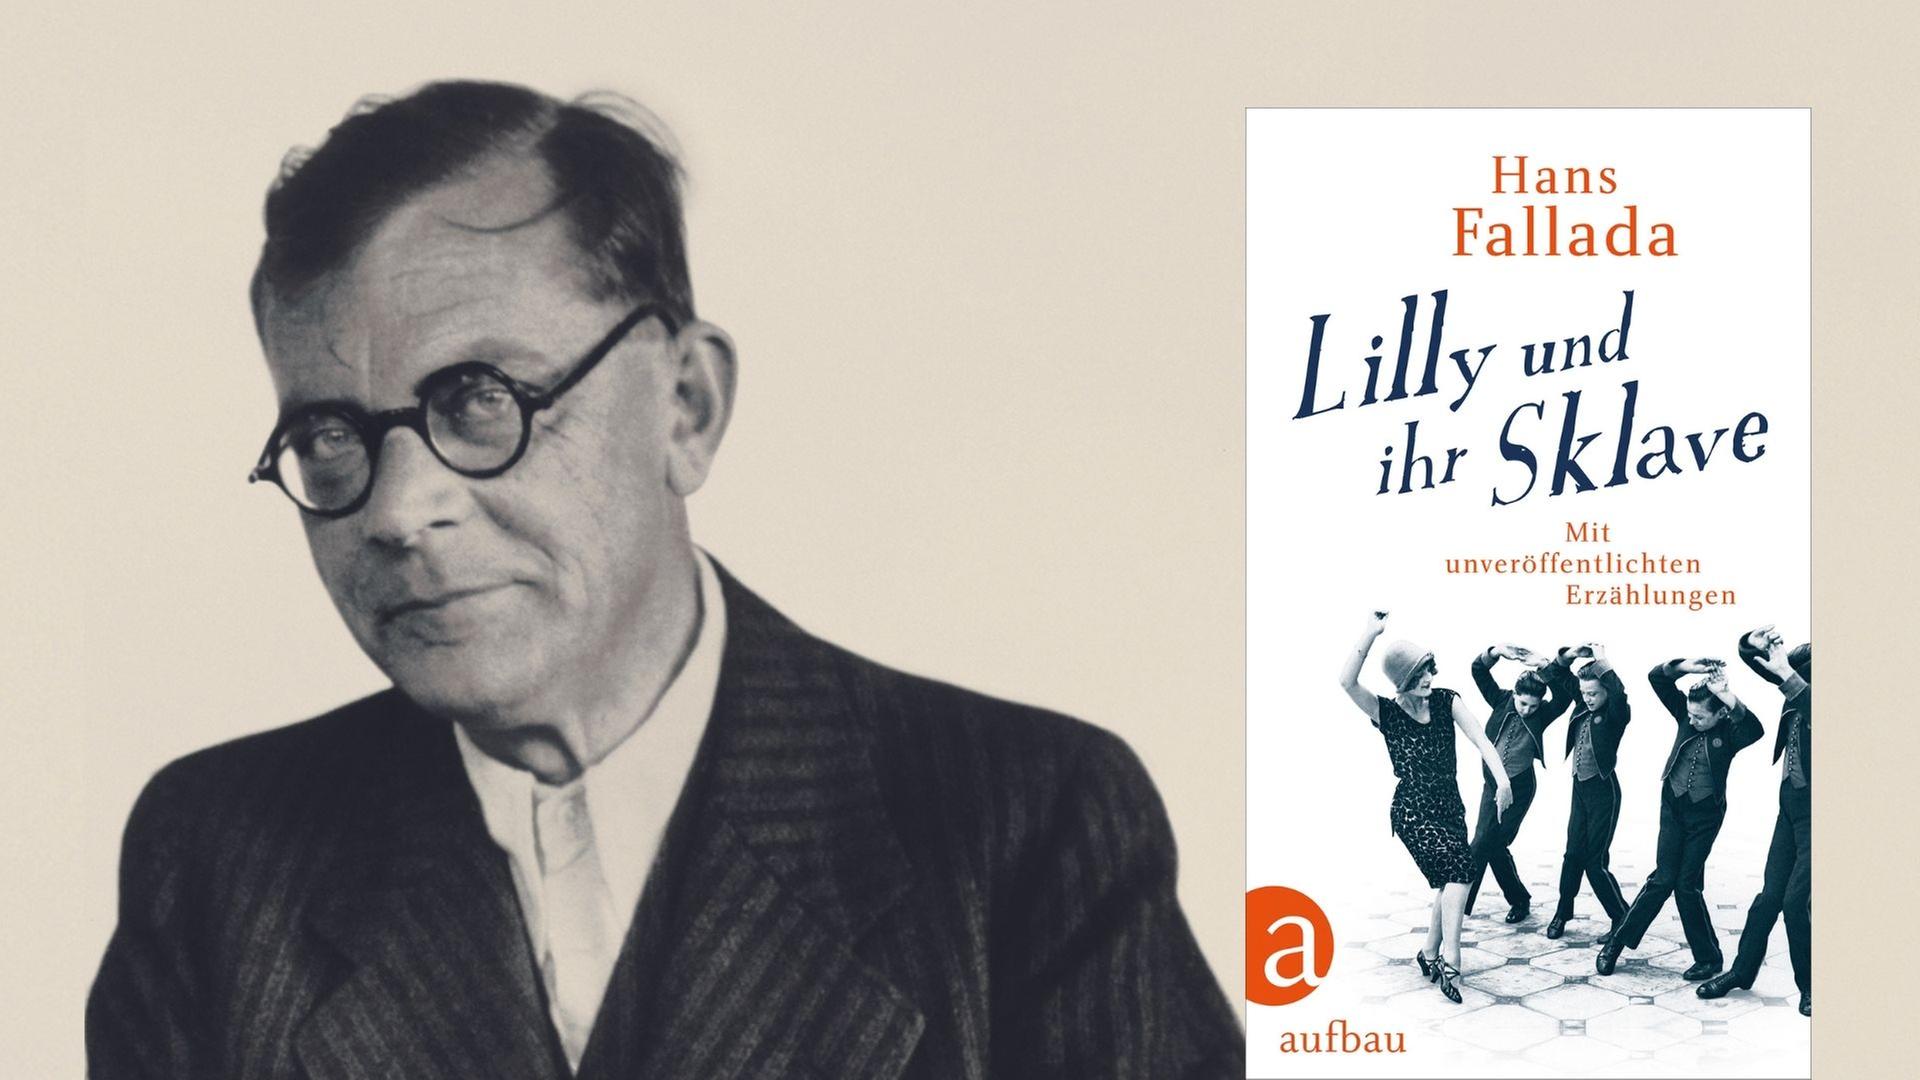 Hans Fallada und das Buch mit seinen Erzählungen "Lilly und ihr Sklave"